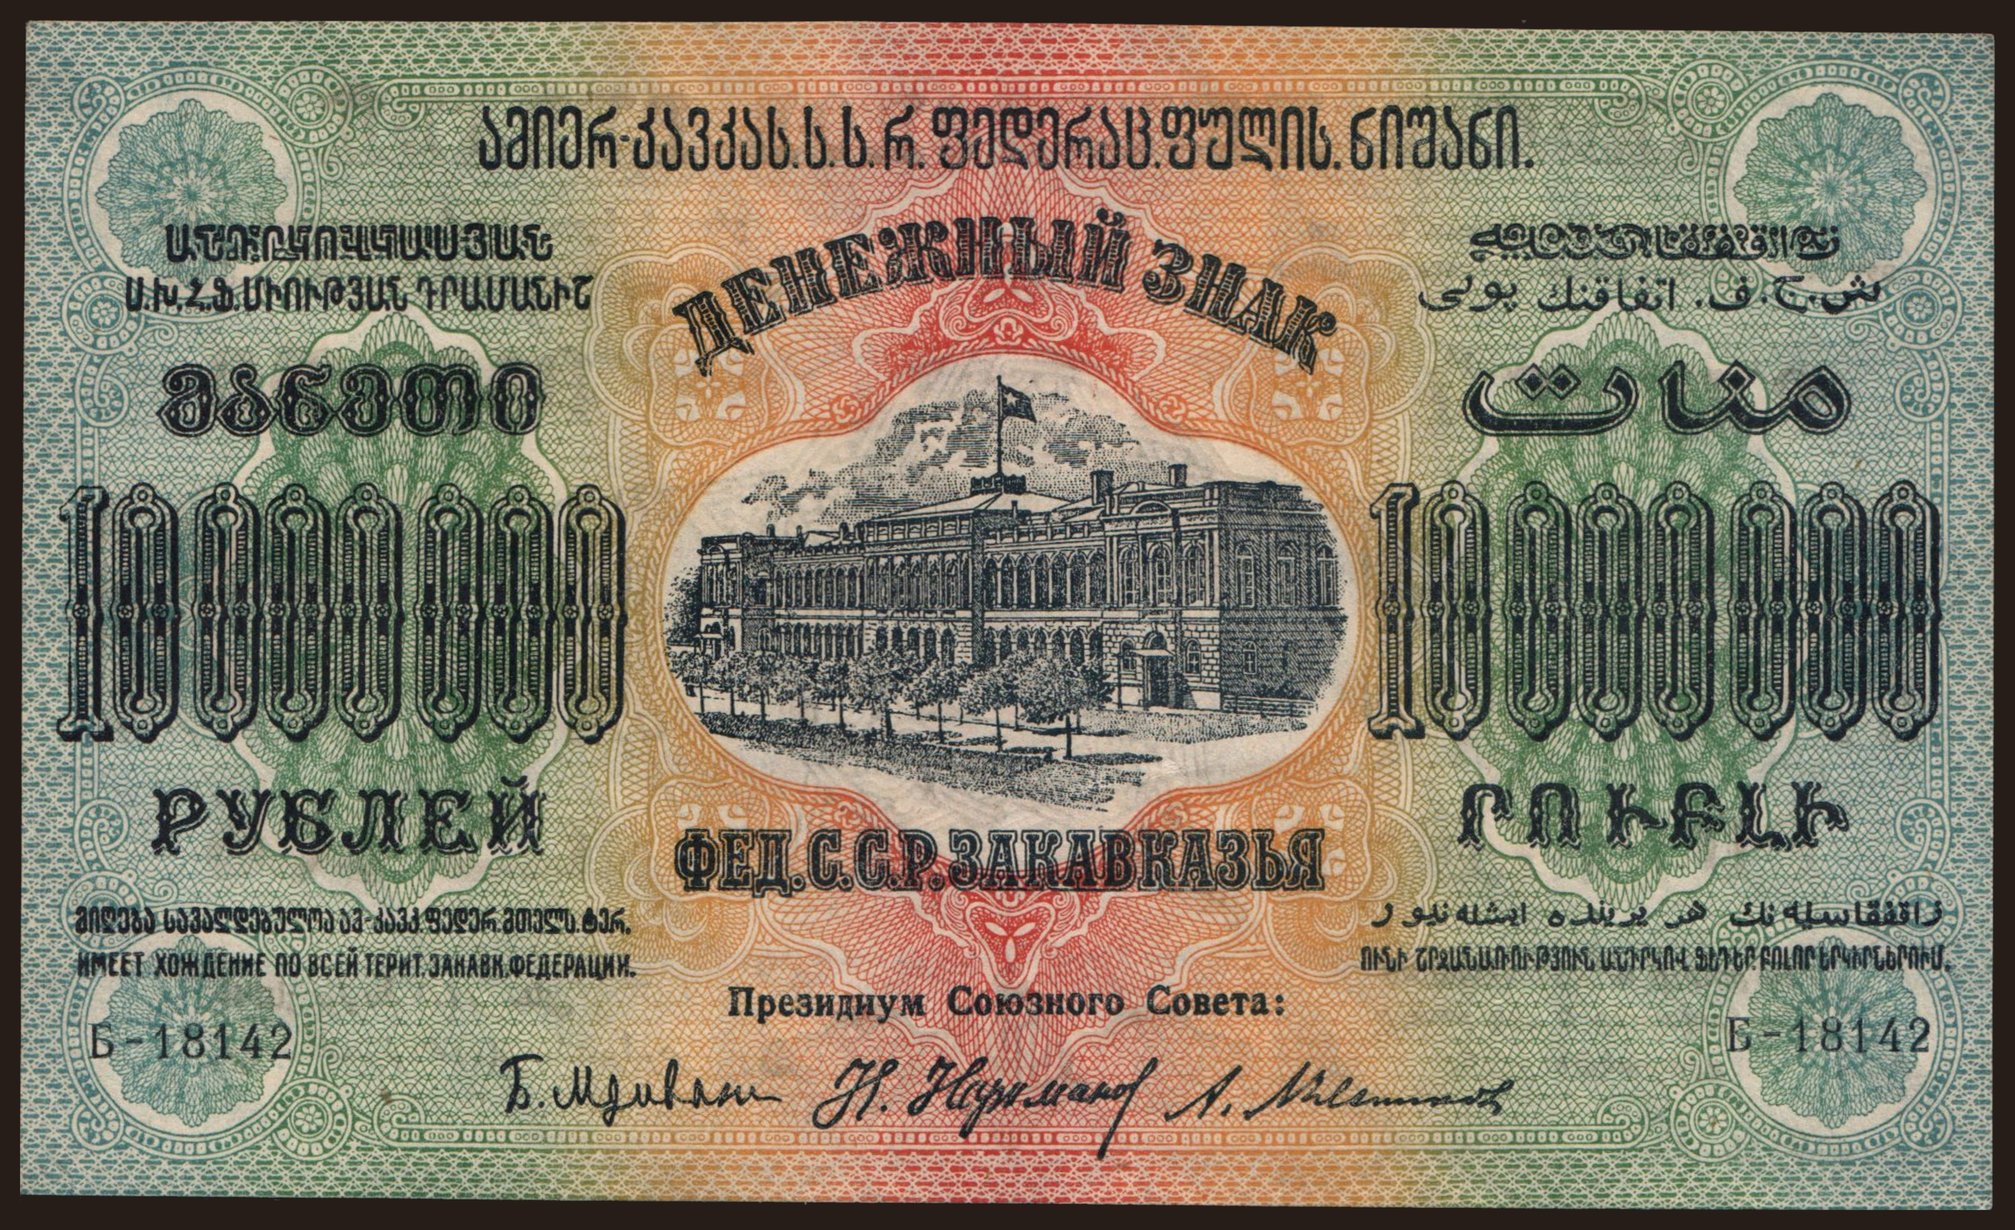 Transcaucasia, 10.000.000 rubel, 1923